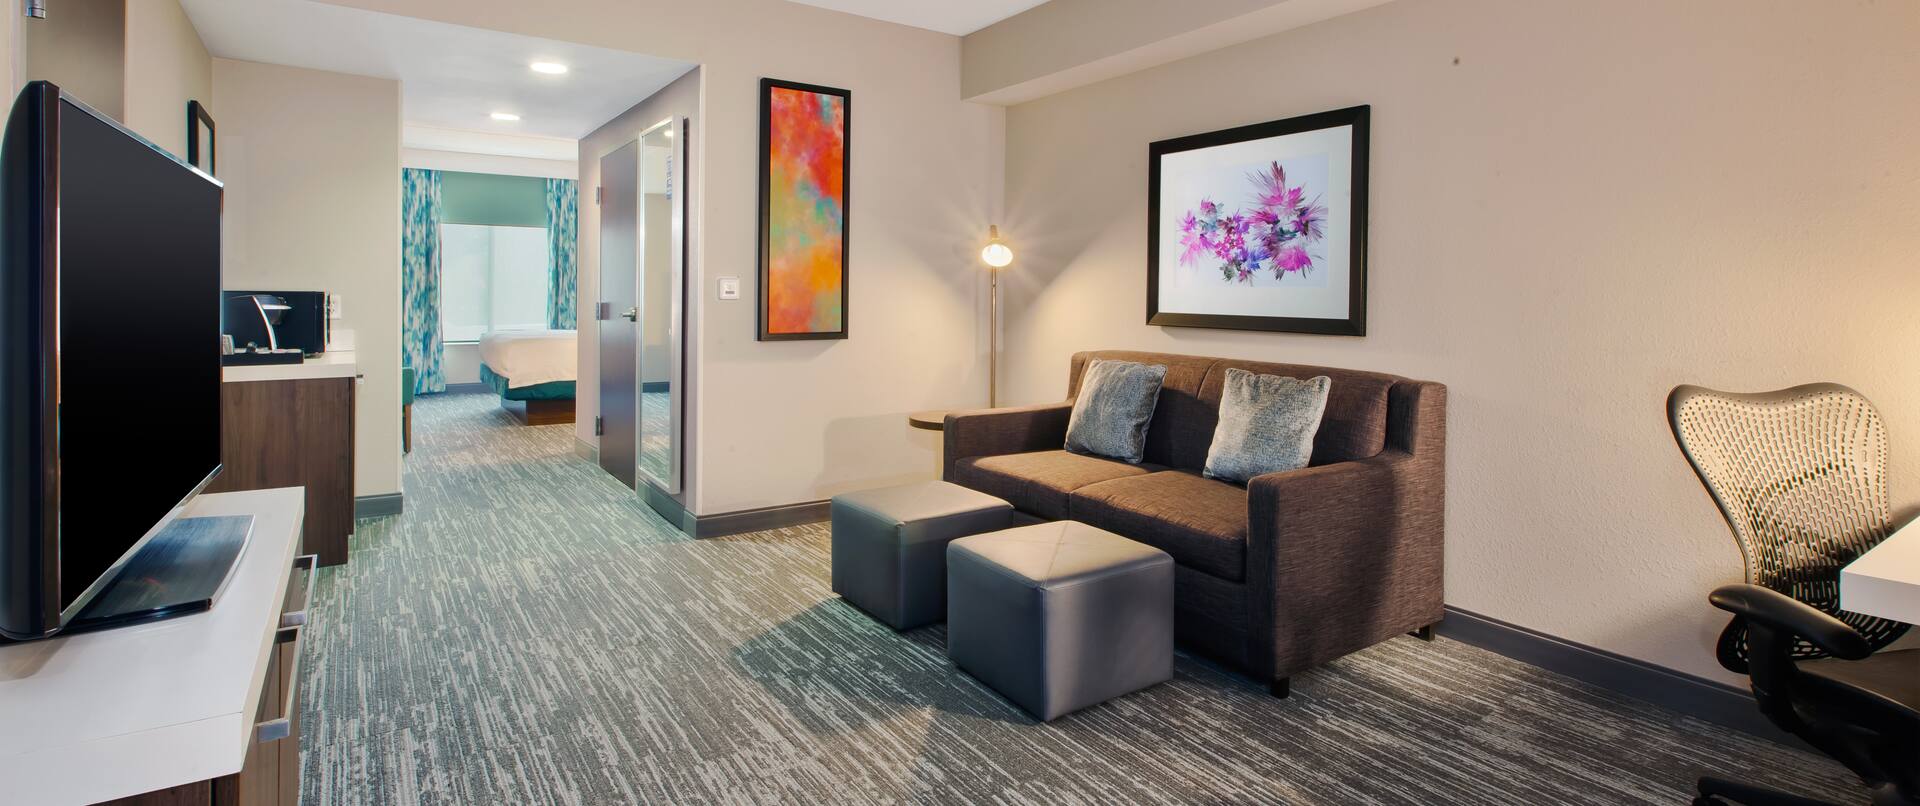 guest suite lounge area, sofa, ottomans, tv